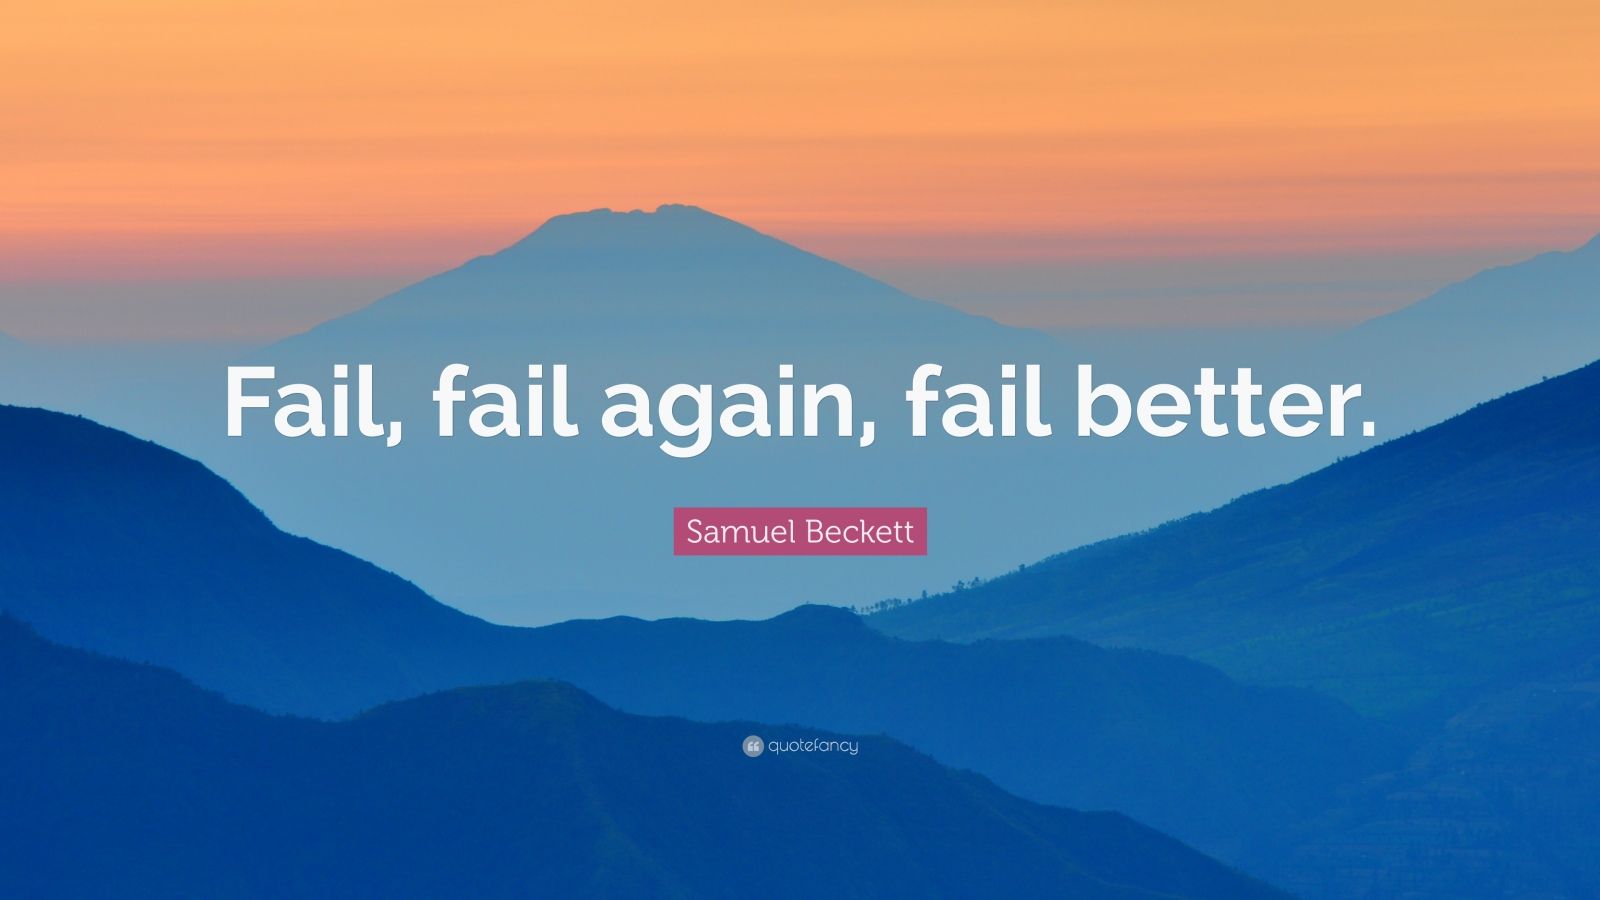 Samuel Beckett Quote: “Fail, fail again, fail better.”